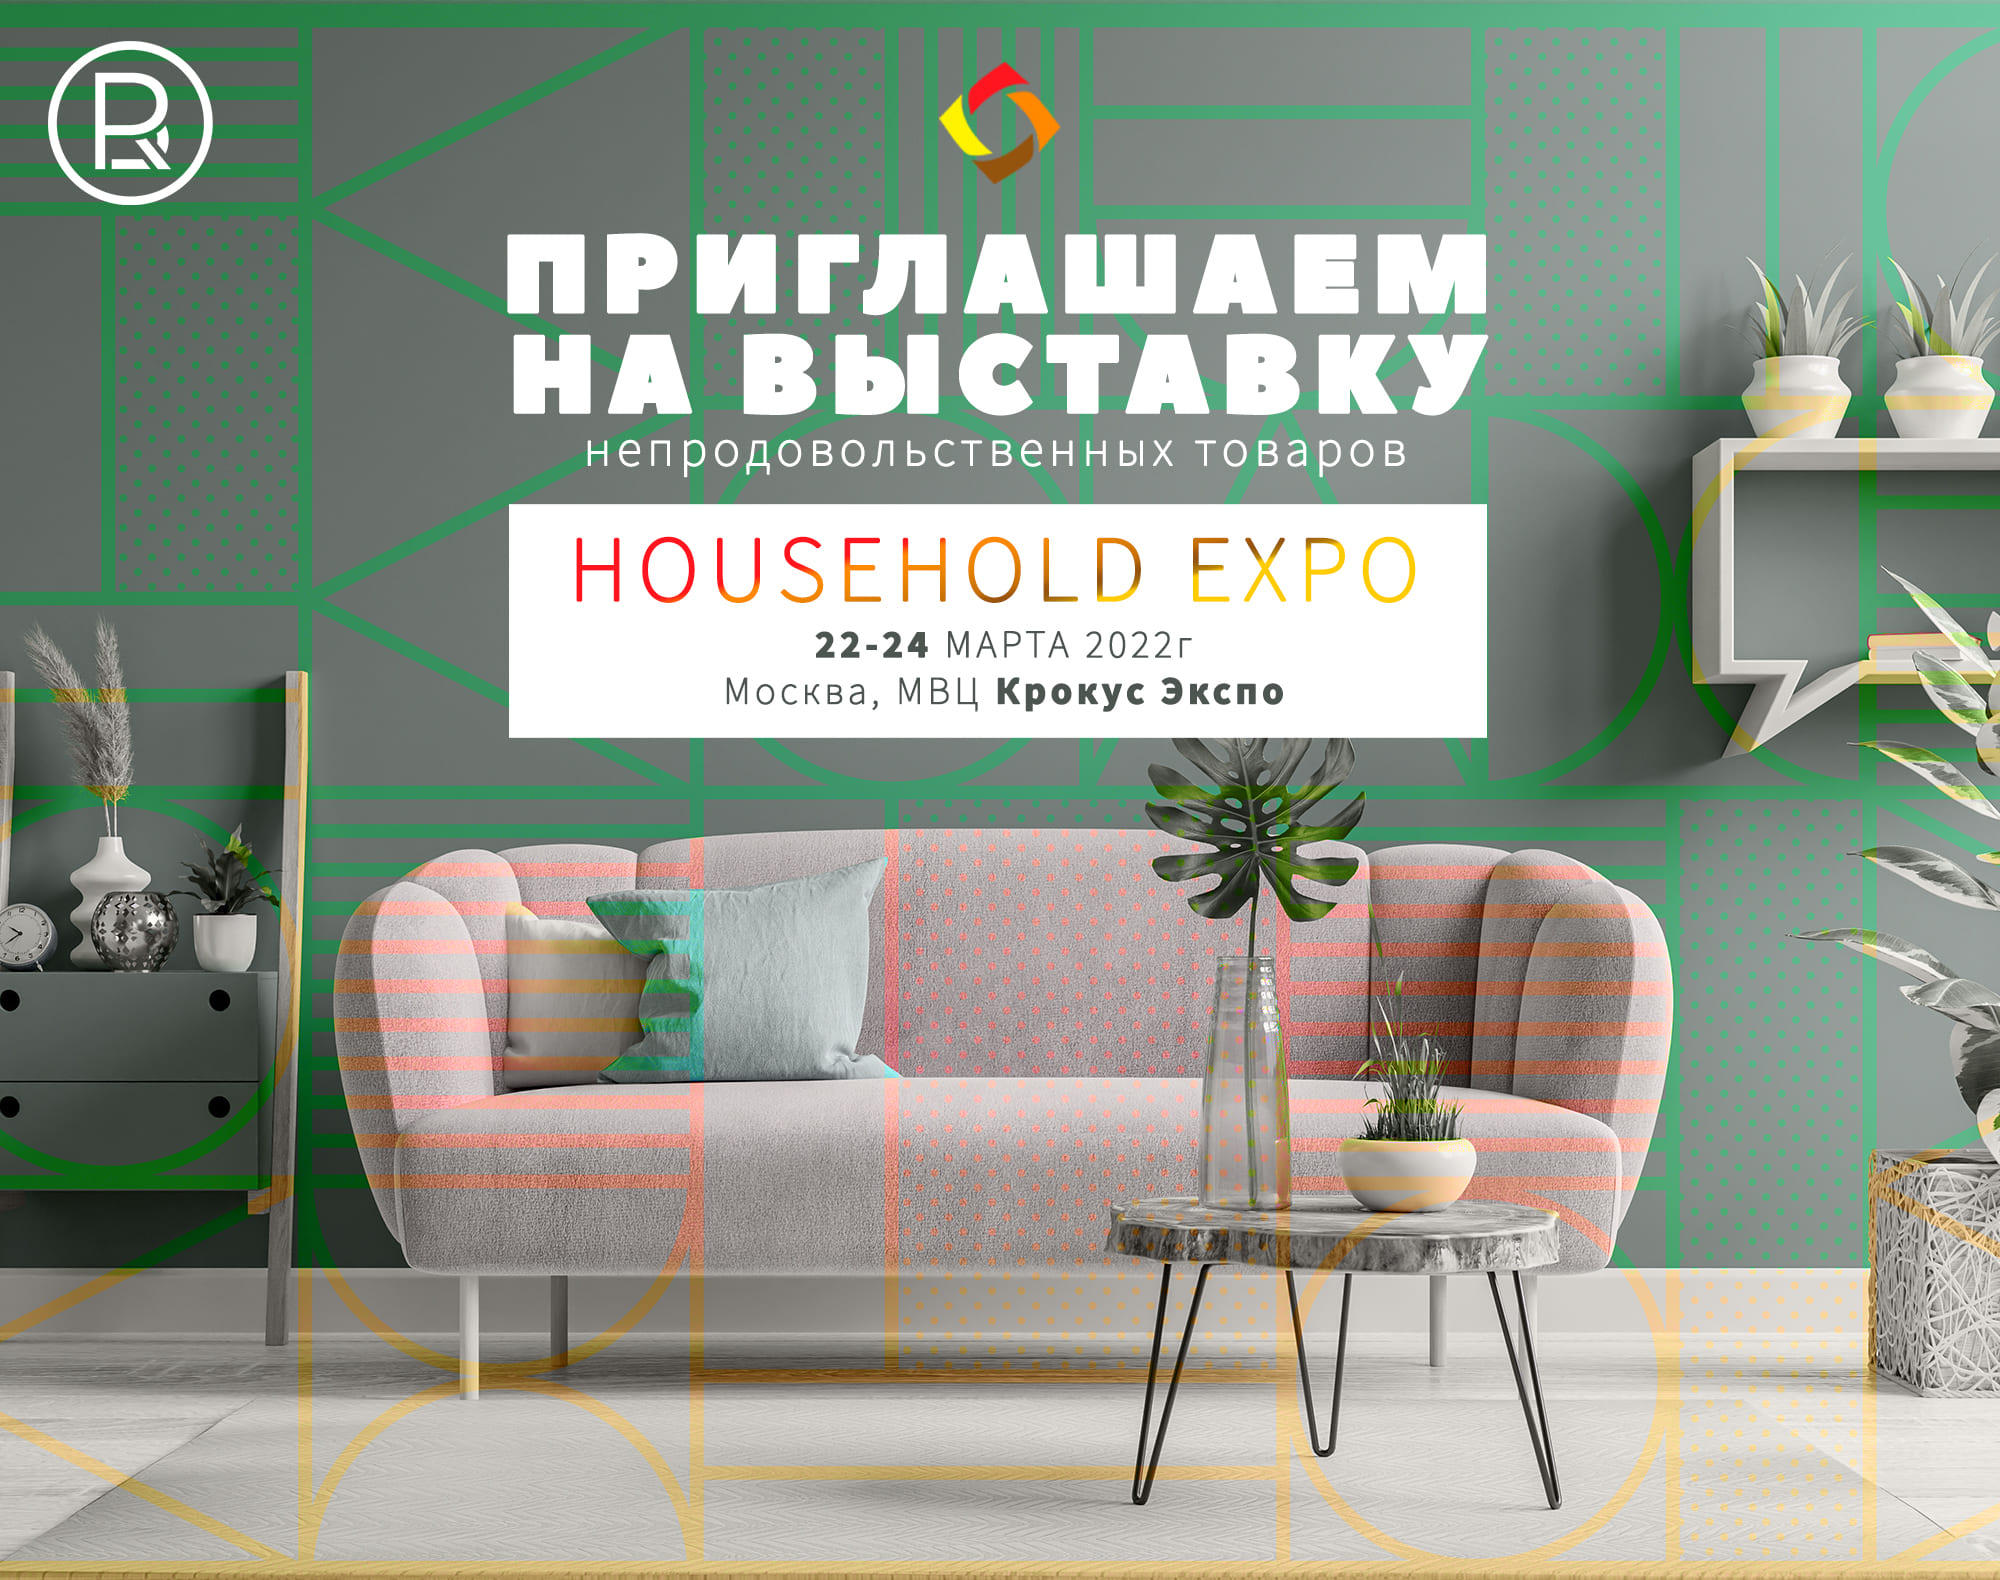 Приглашаем на выставку HOUSEHOLD EXPO